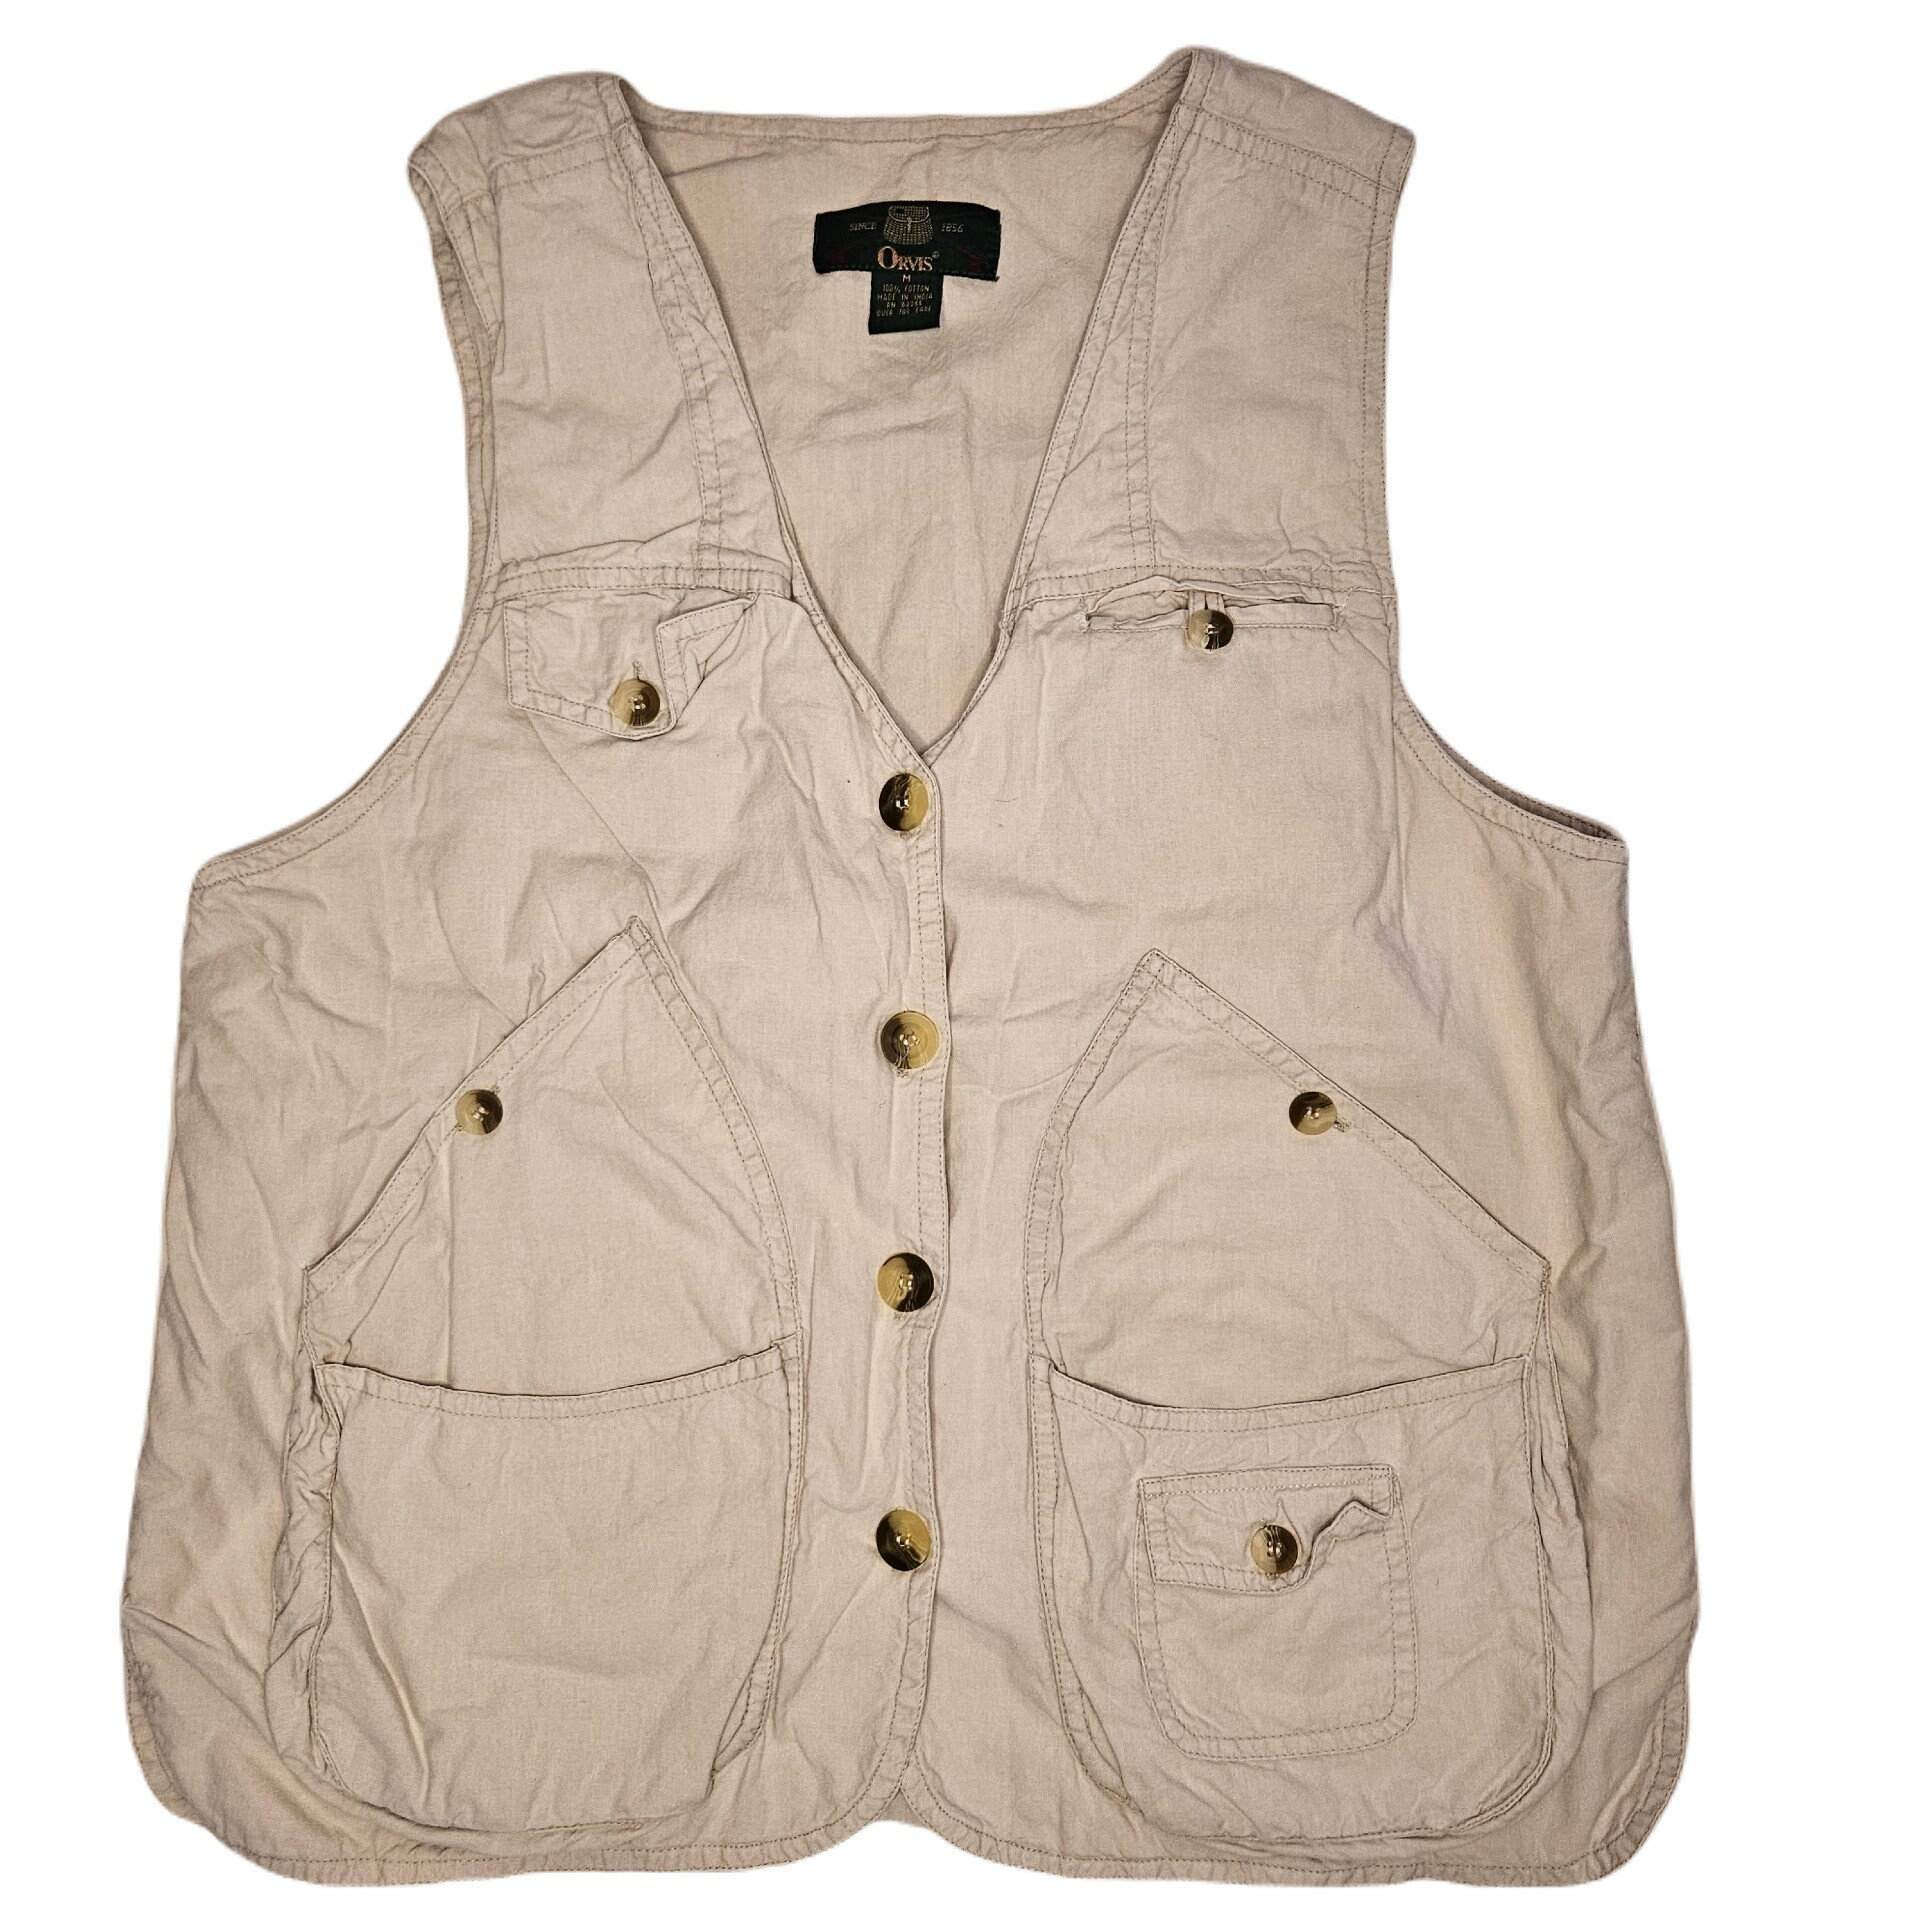 90's Orvis Fishing Vest / Women's Medium / Light Khaki/beige 